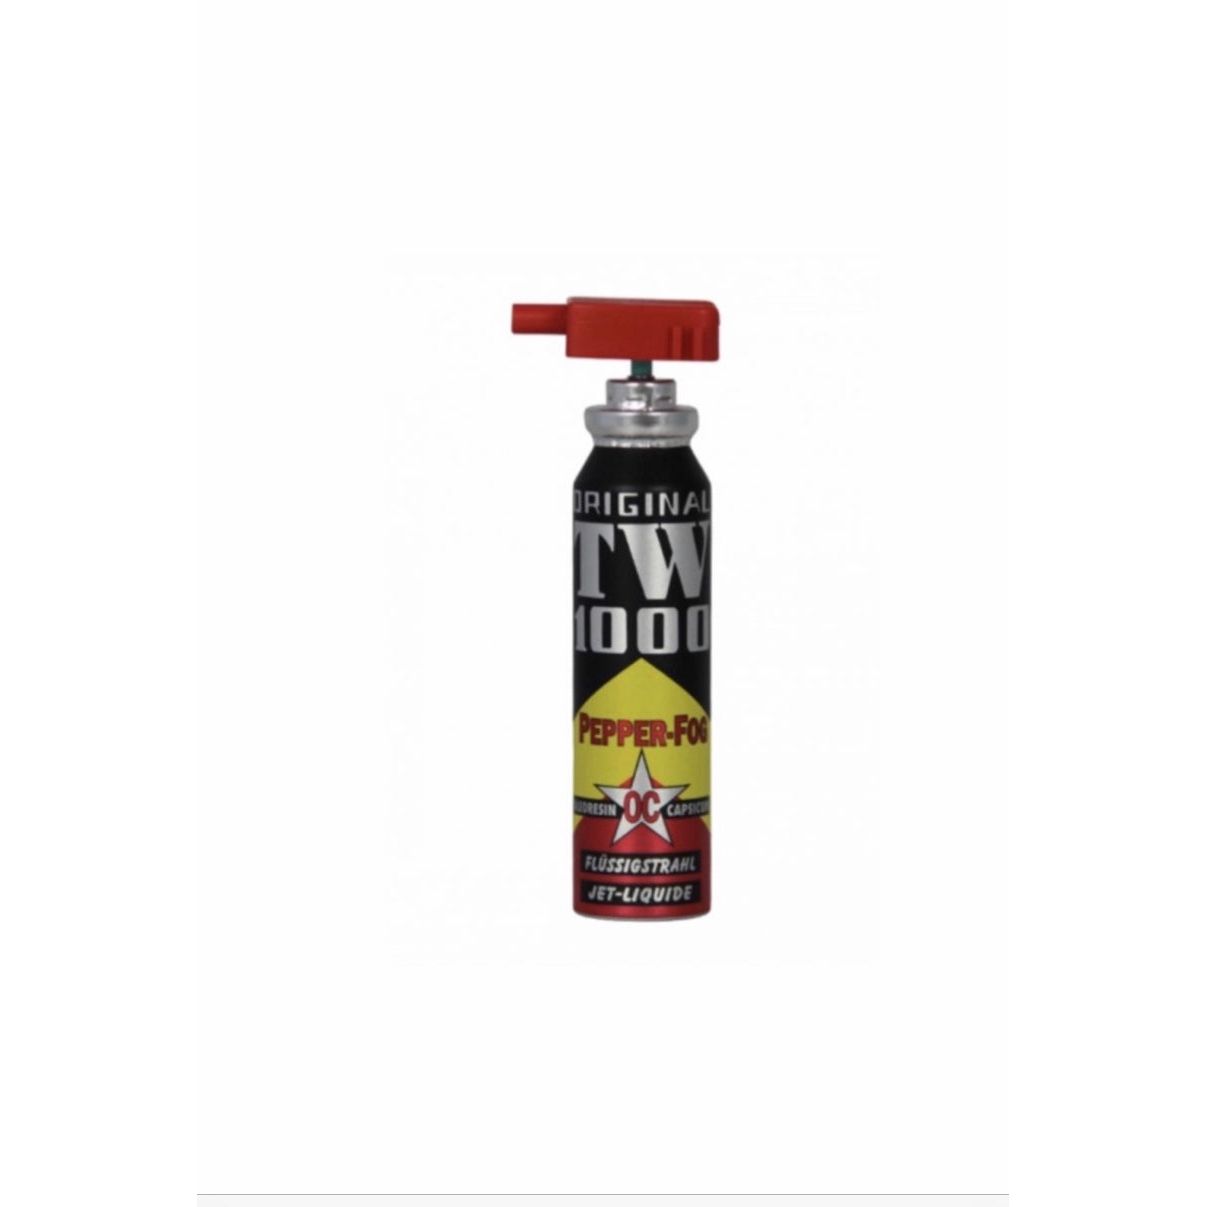 Cartuccia di ricarica per spray al peperoncino TW1000 RSG 4, 30 ml